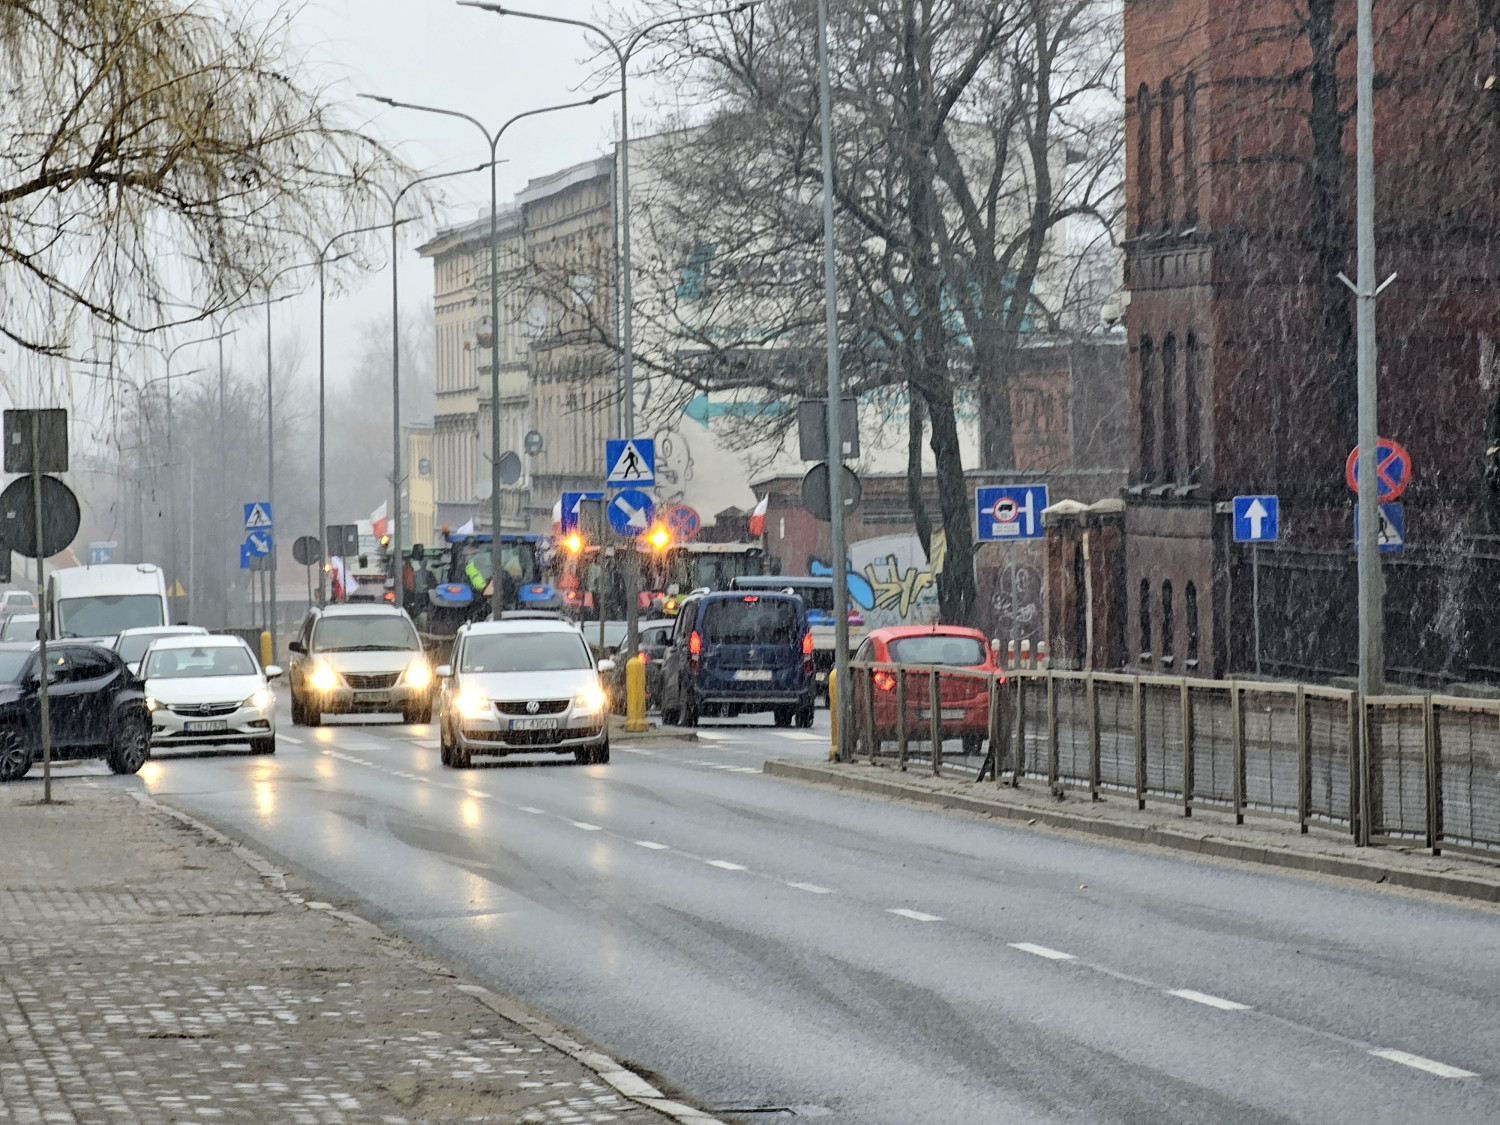 Krótko po godz. 9:00 pierwsze pojazdy protestujących rolników zmierzały ul. Dworcową w kierunku Gniewkówca.